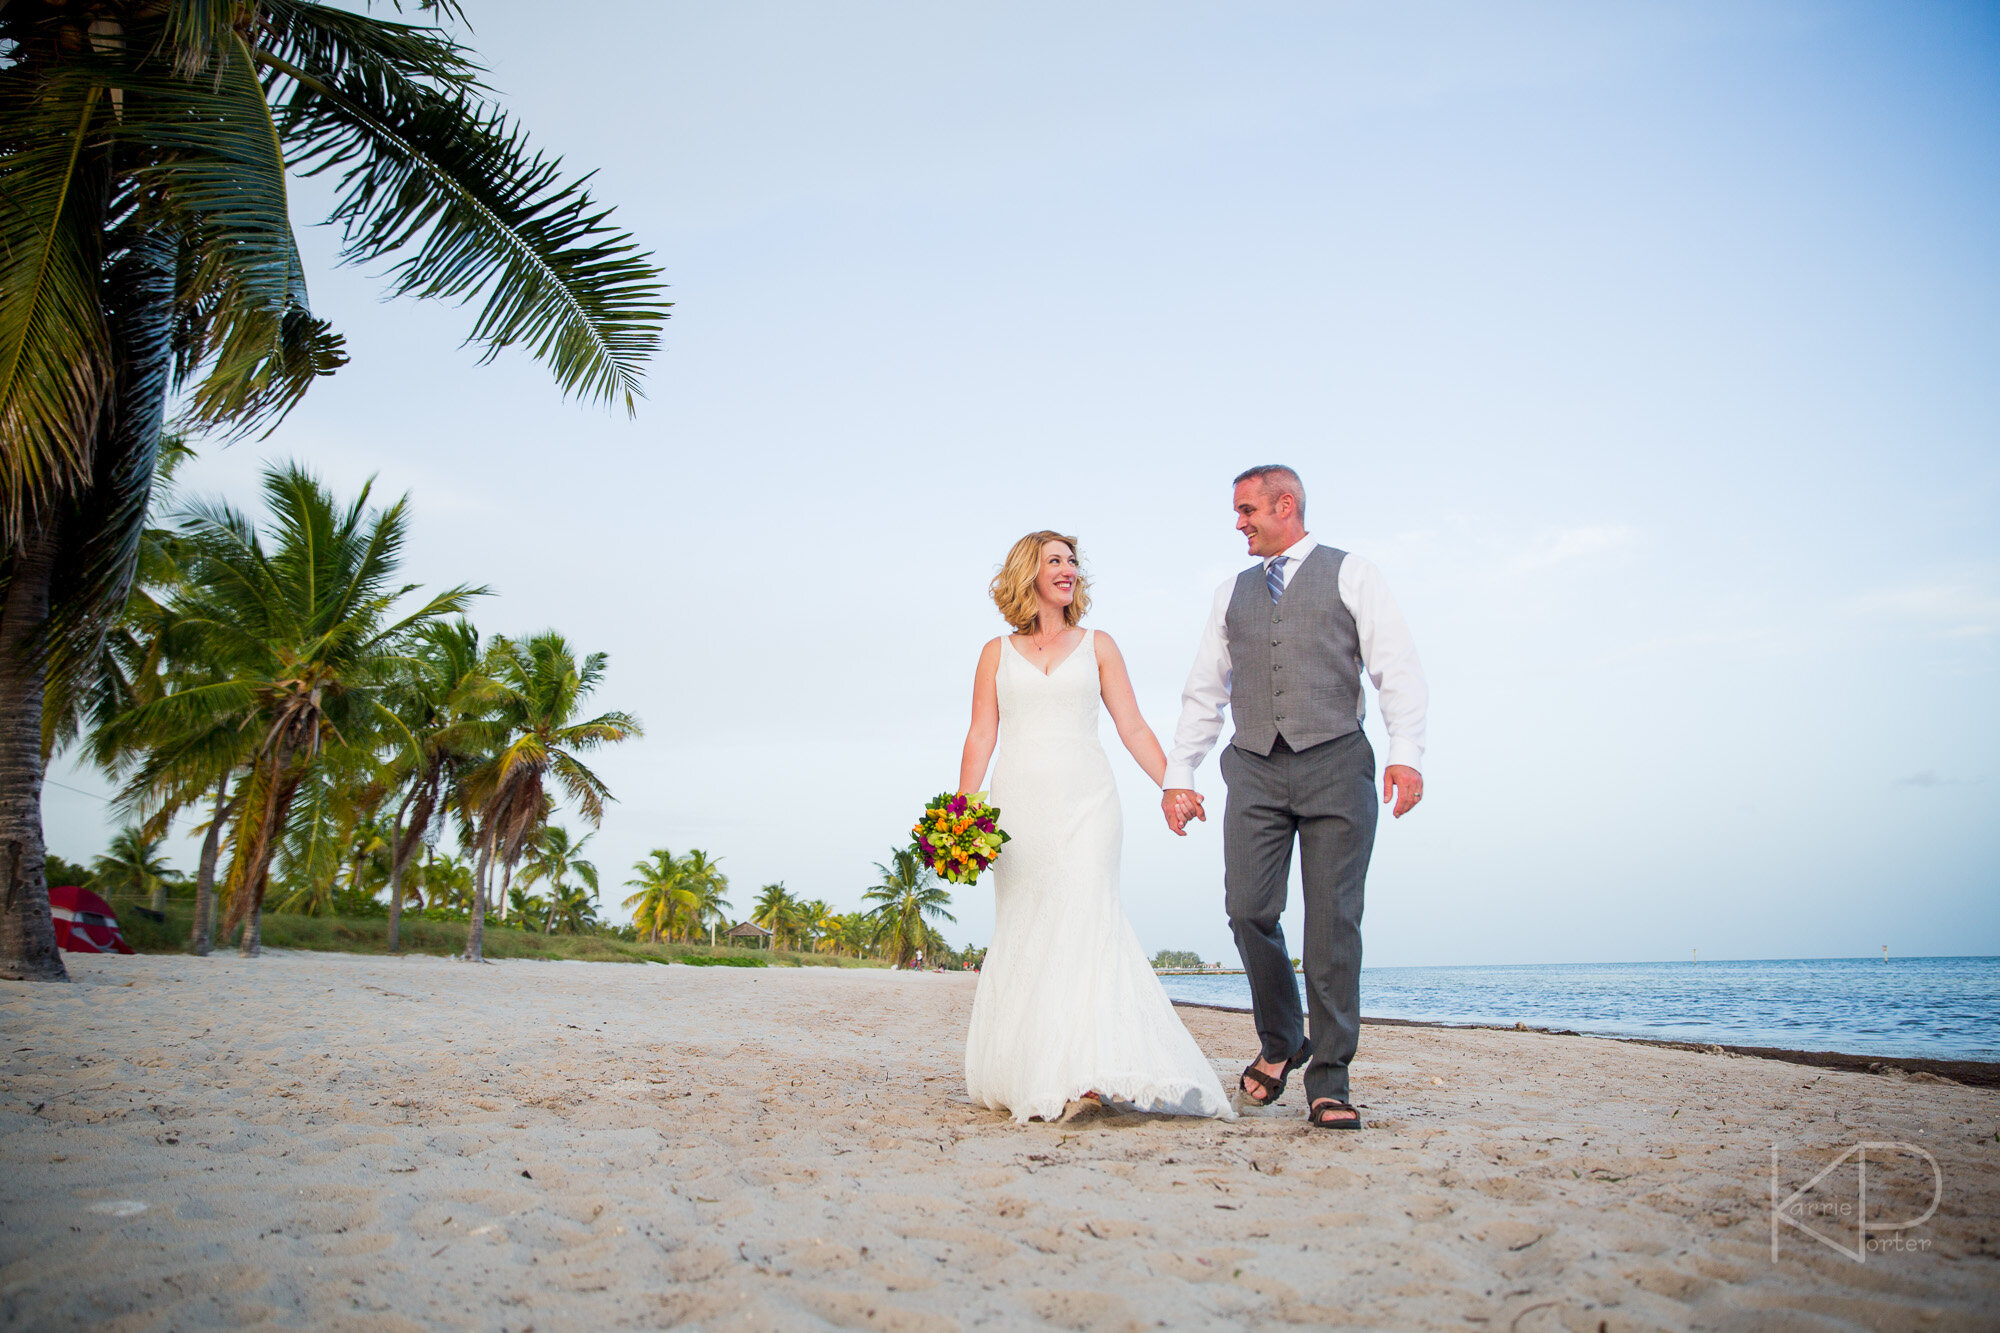 Smathers Beach Wedding Ceremony in Key West